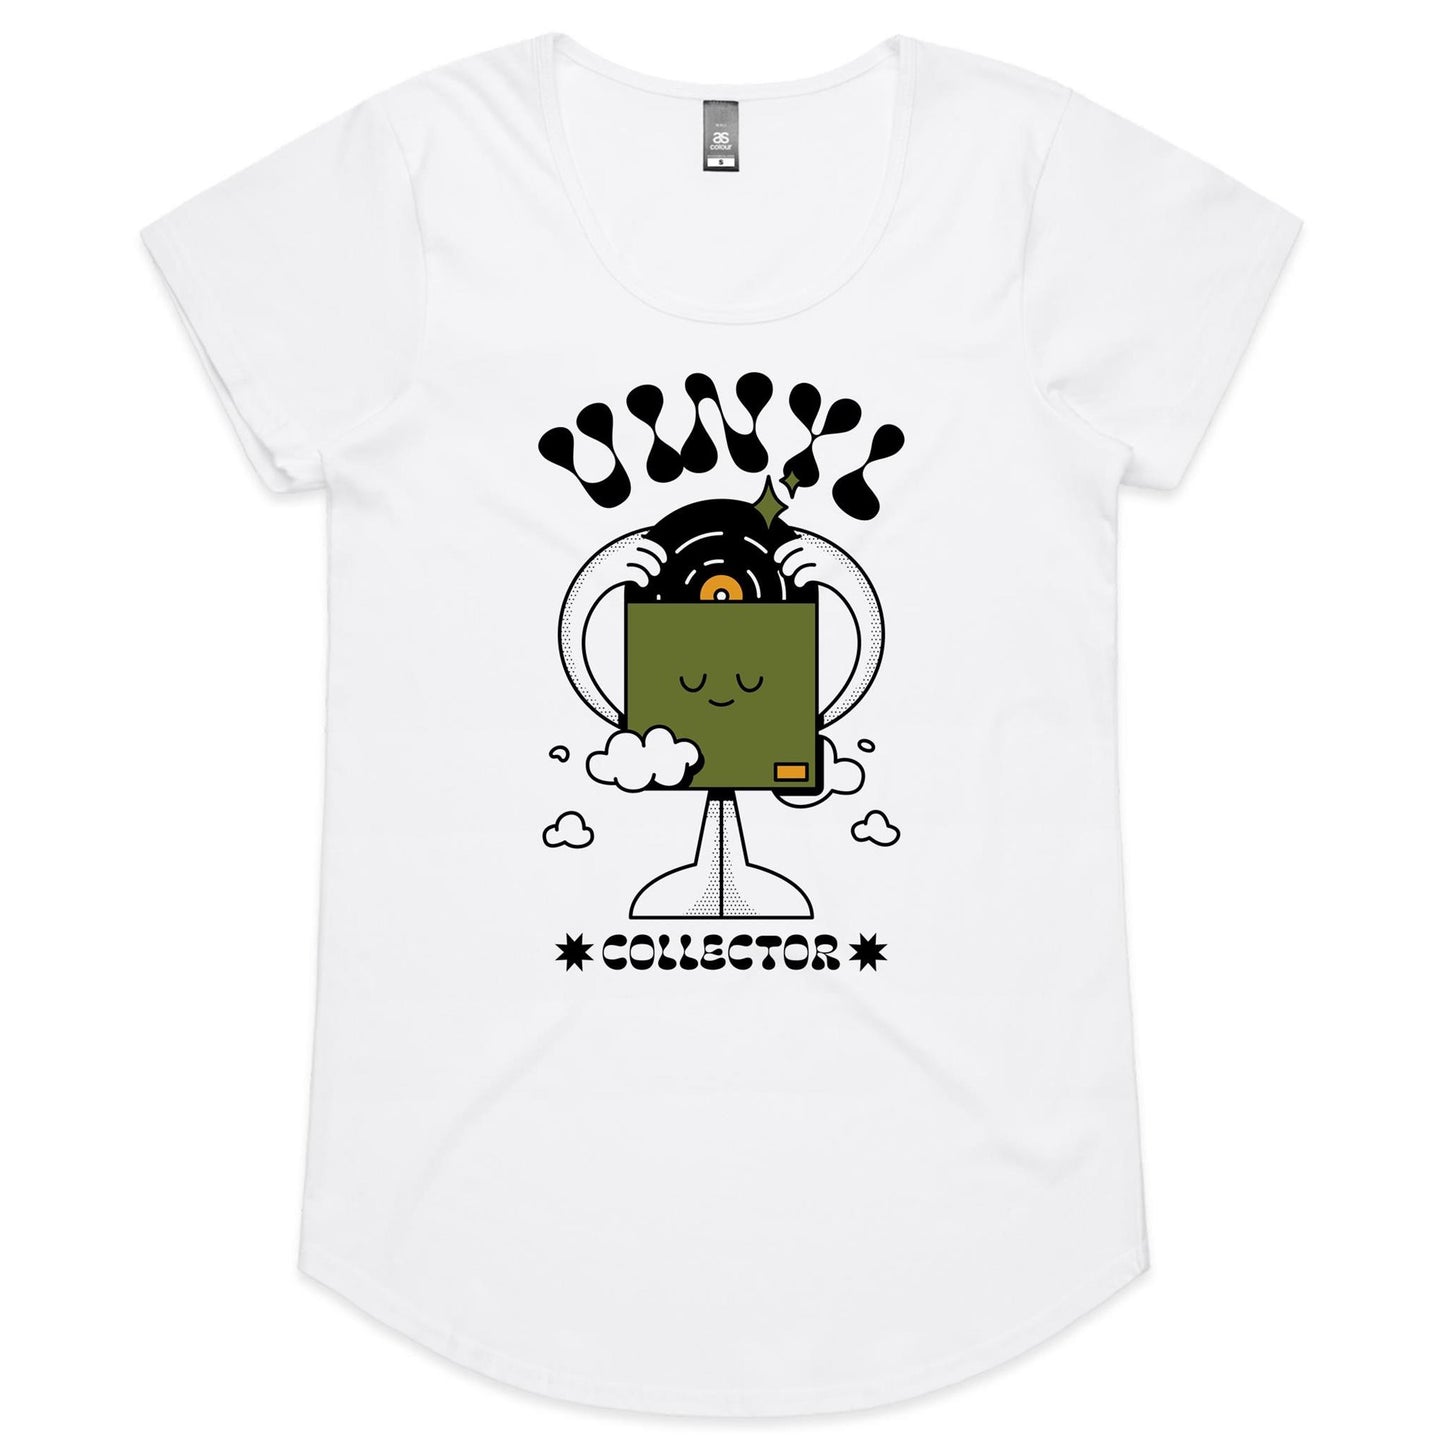 Vinyl Collector - Womens Scoop Neck T-Shirt White Womens Scoop Neck T-shirt Music Retro